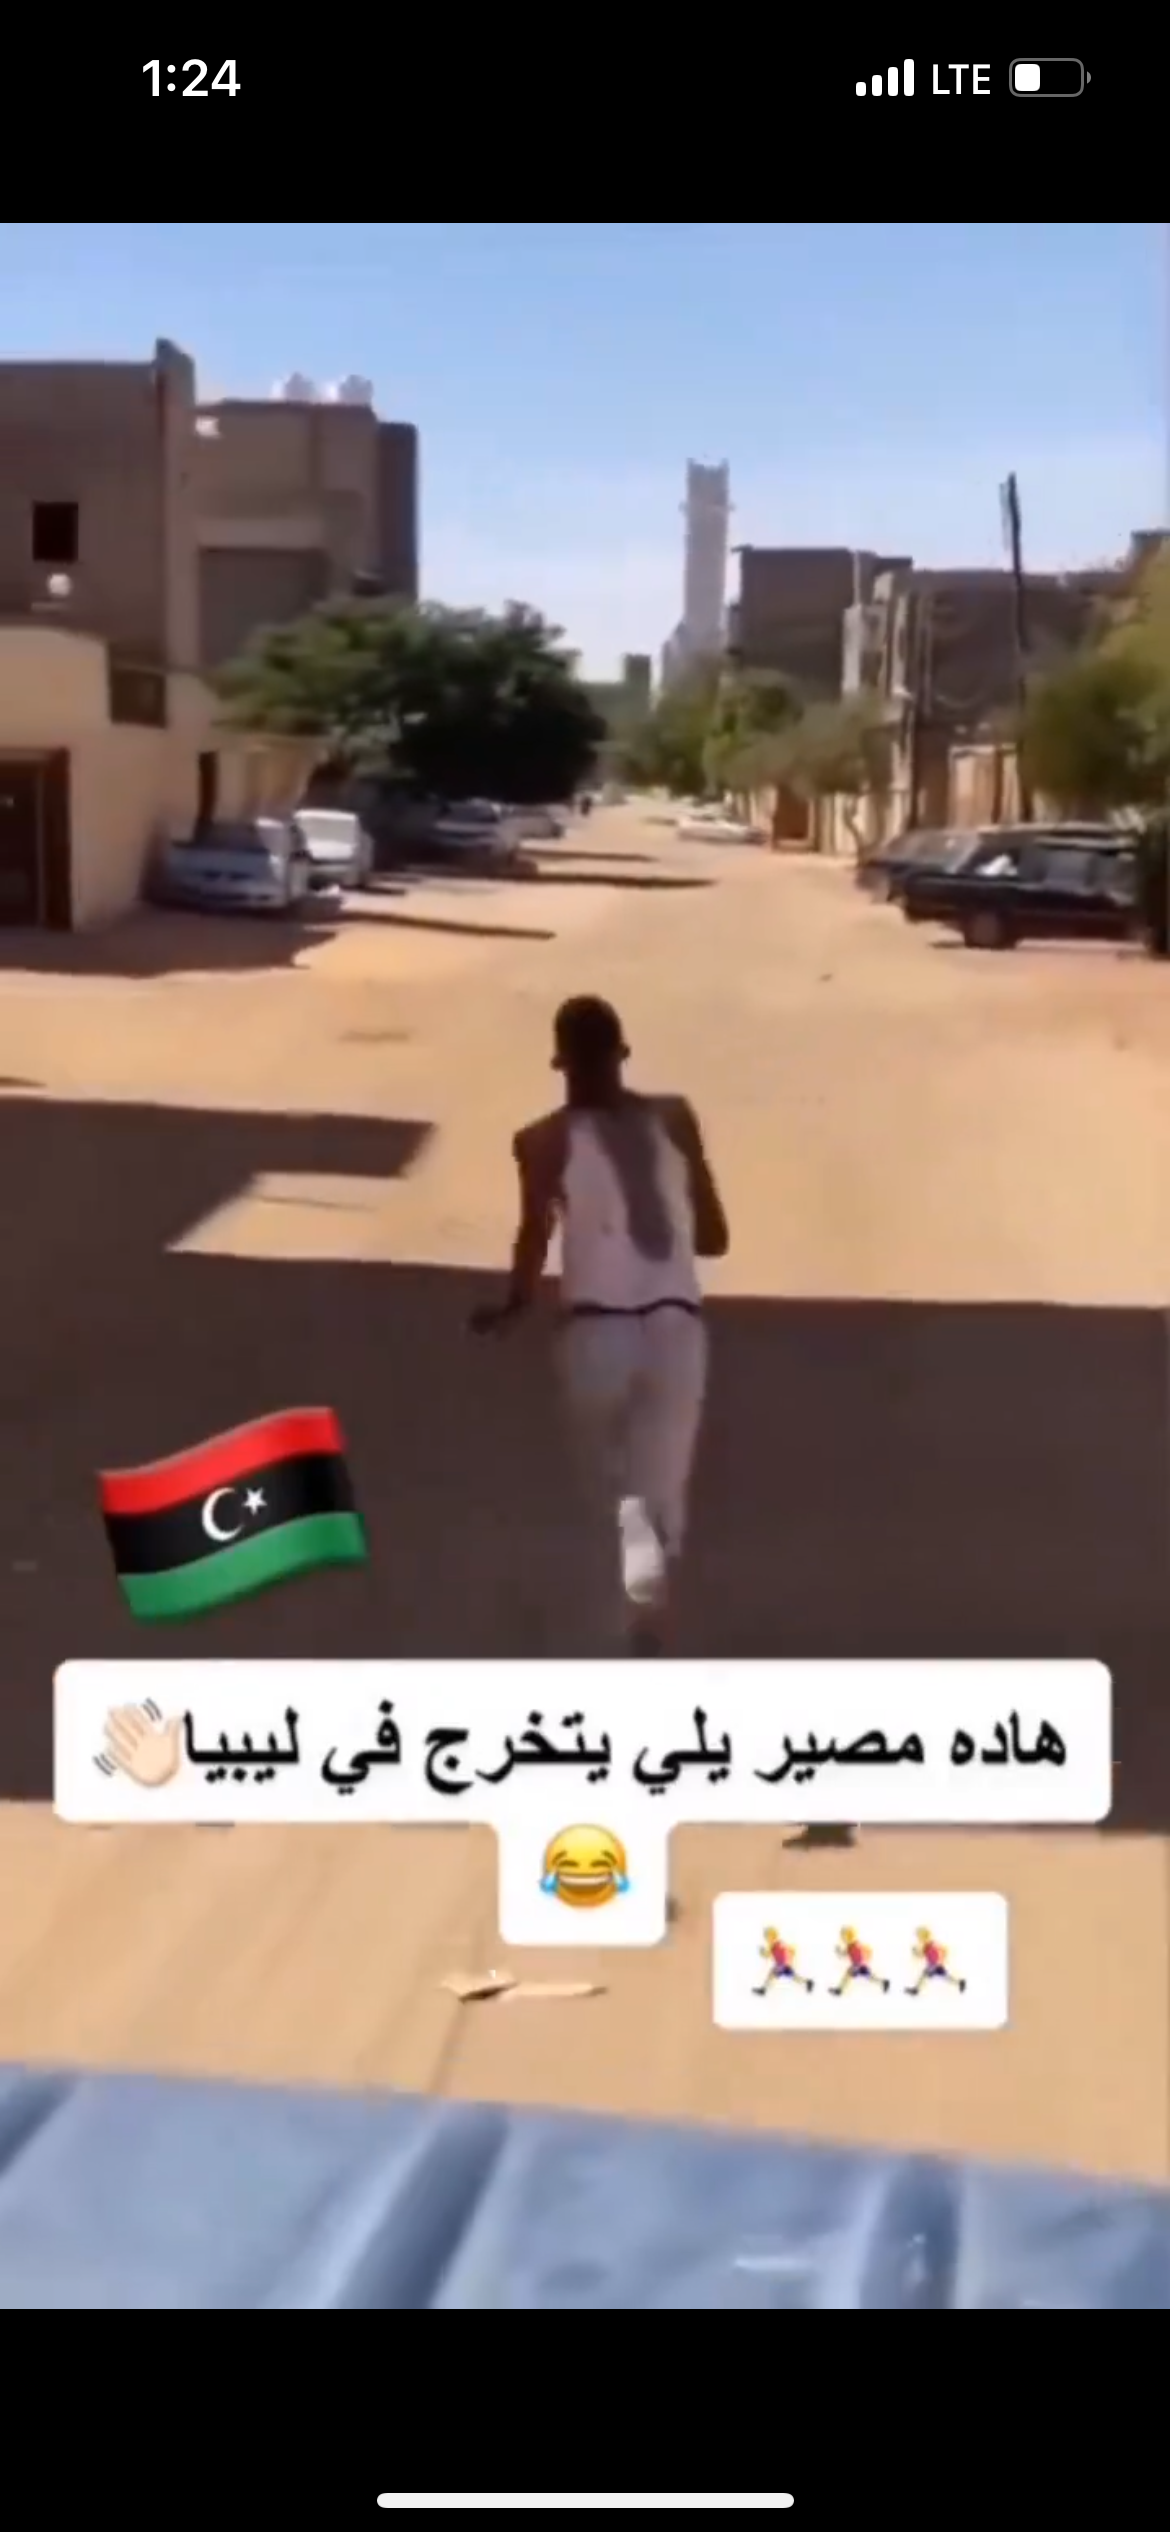 هذا الفيديو يظهر شاب ليبي محتفلاً بنجاحه وليس لاجيء سوداني تتم مطاردته من قبل المليشيات في ليبيا